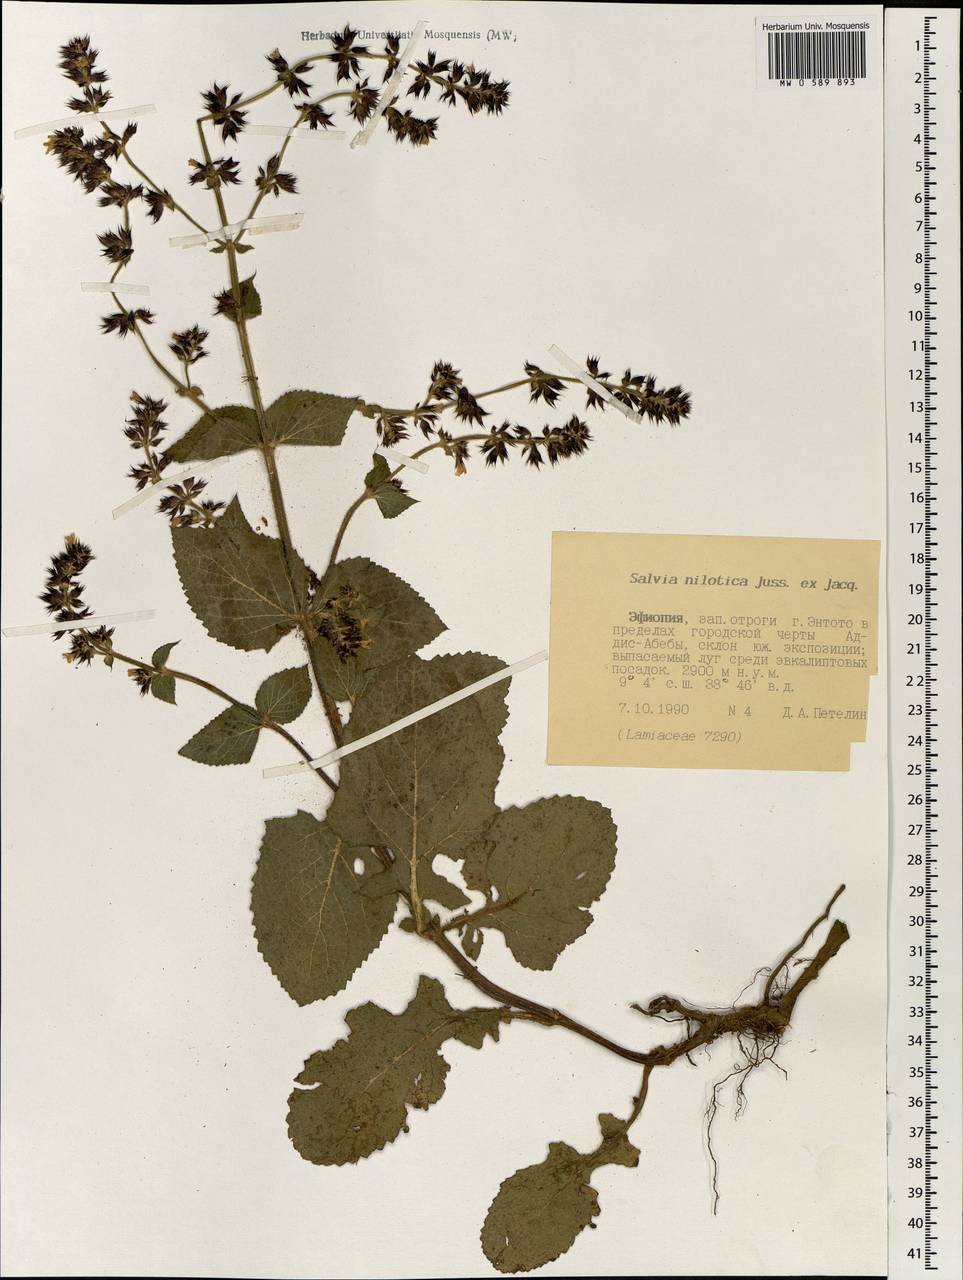 Salvia nilotica Juss. ex Jacq., Africa (AFR) (Ethiopia)